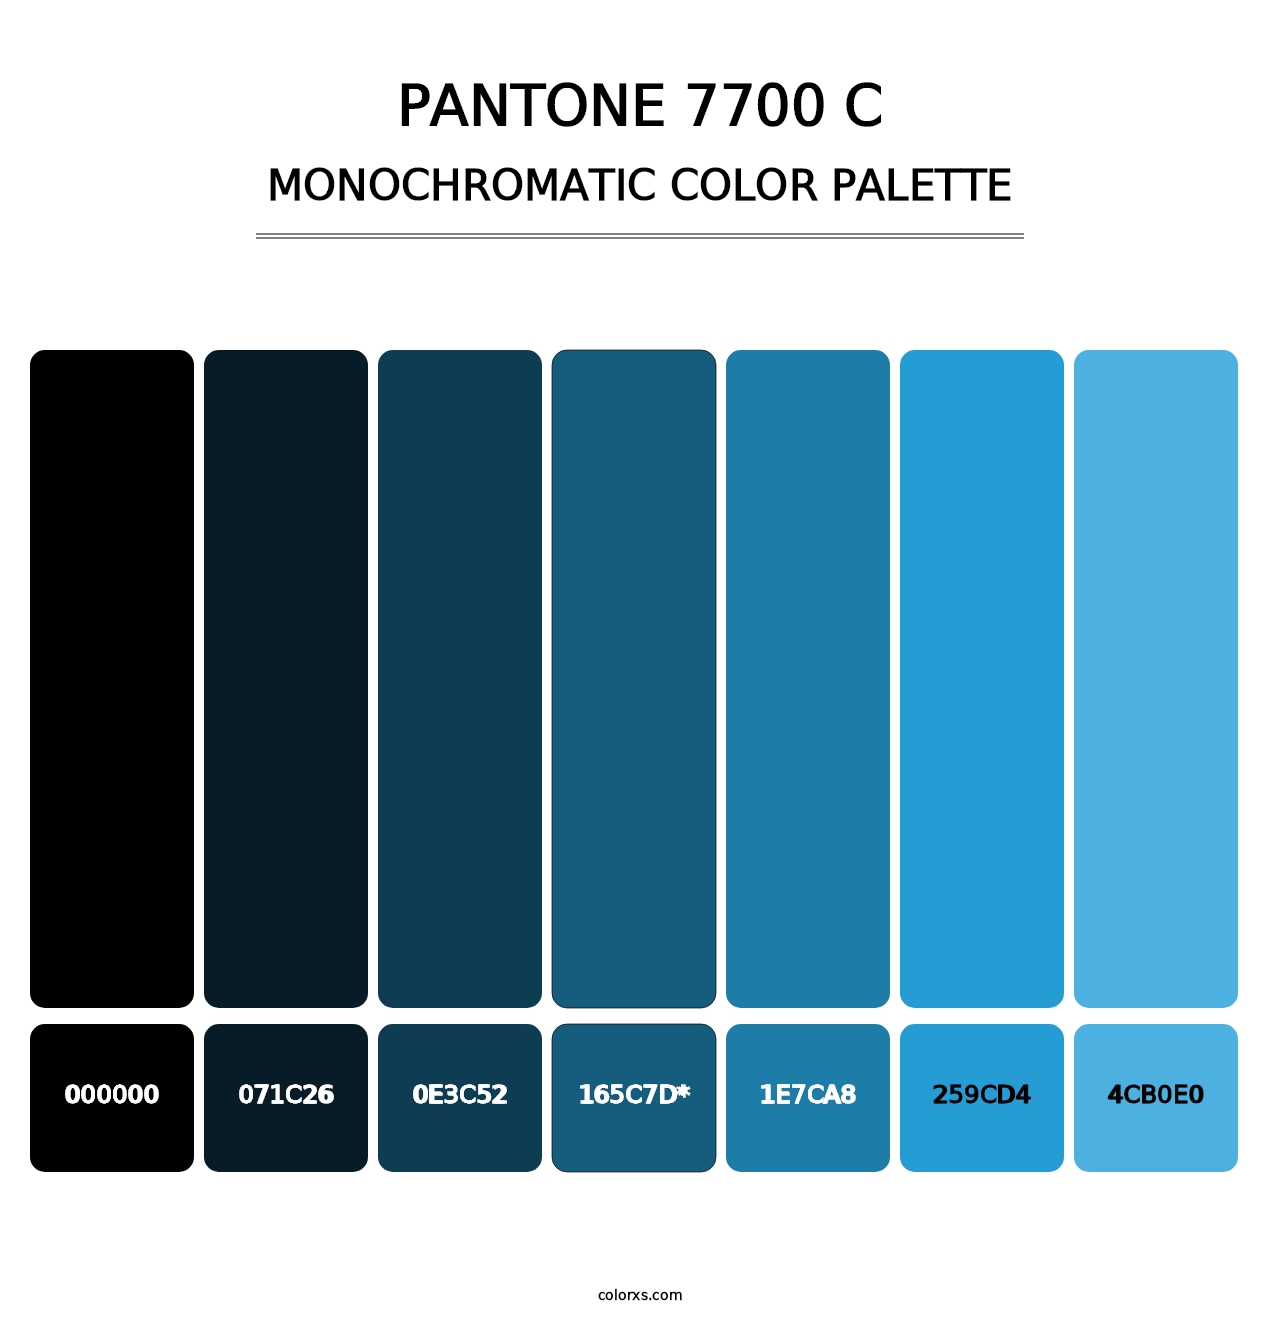 PANTONE 7700 C - Monochromatic Color Palette